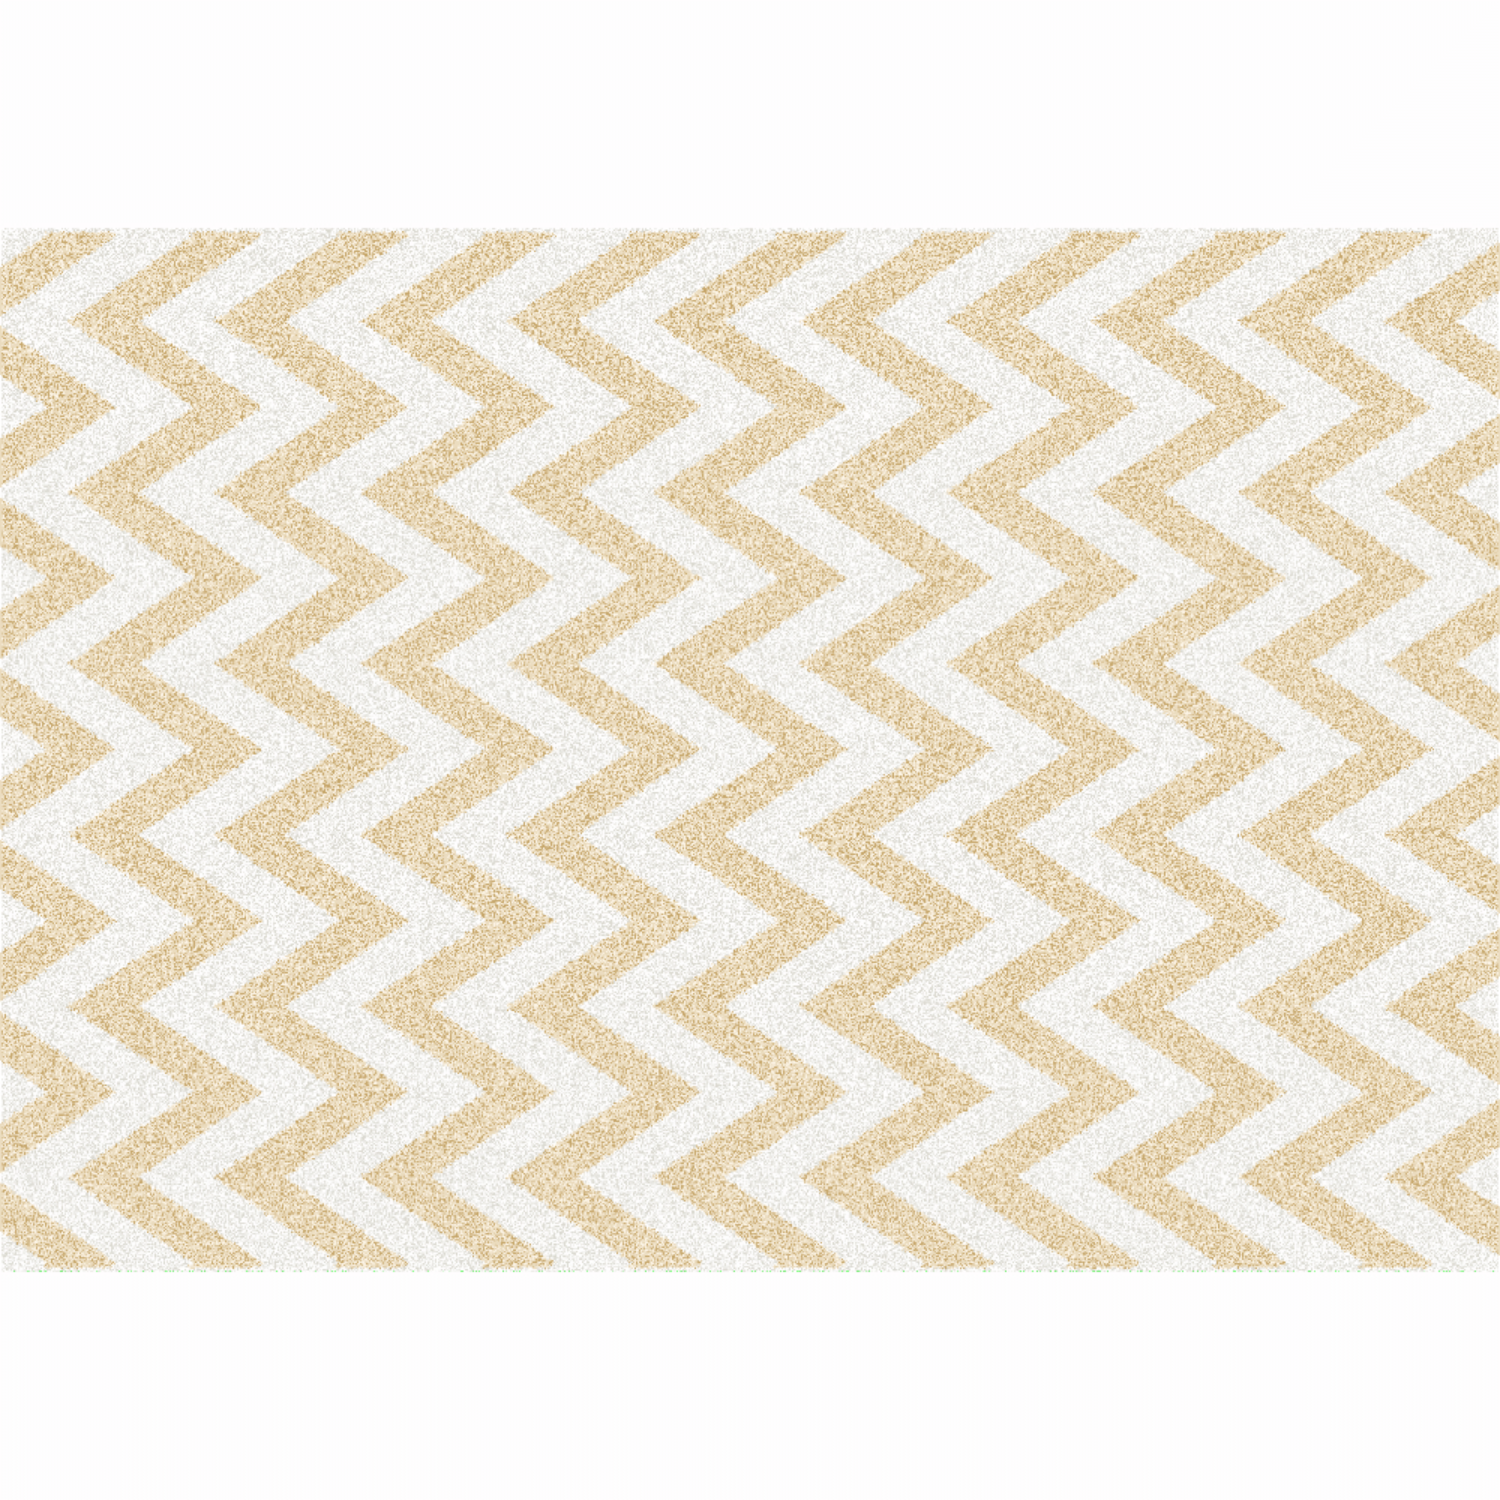 Szőnyeg, bézs-fehér minta, 133x190, ADISA TYP 2